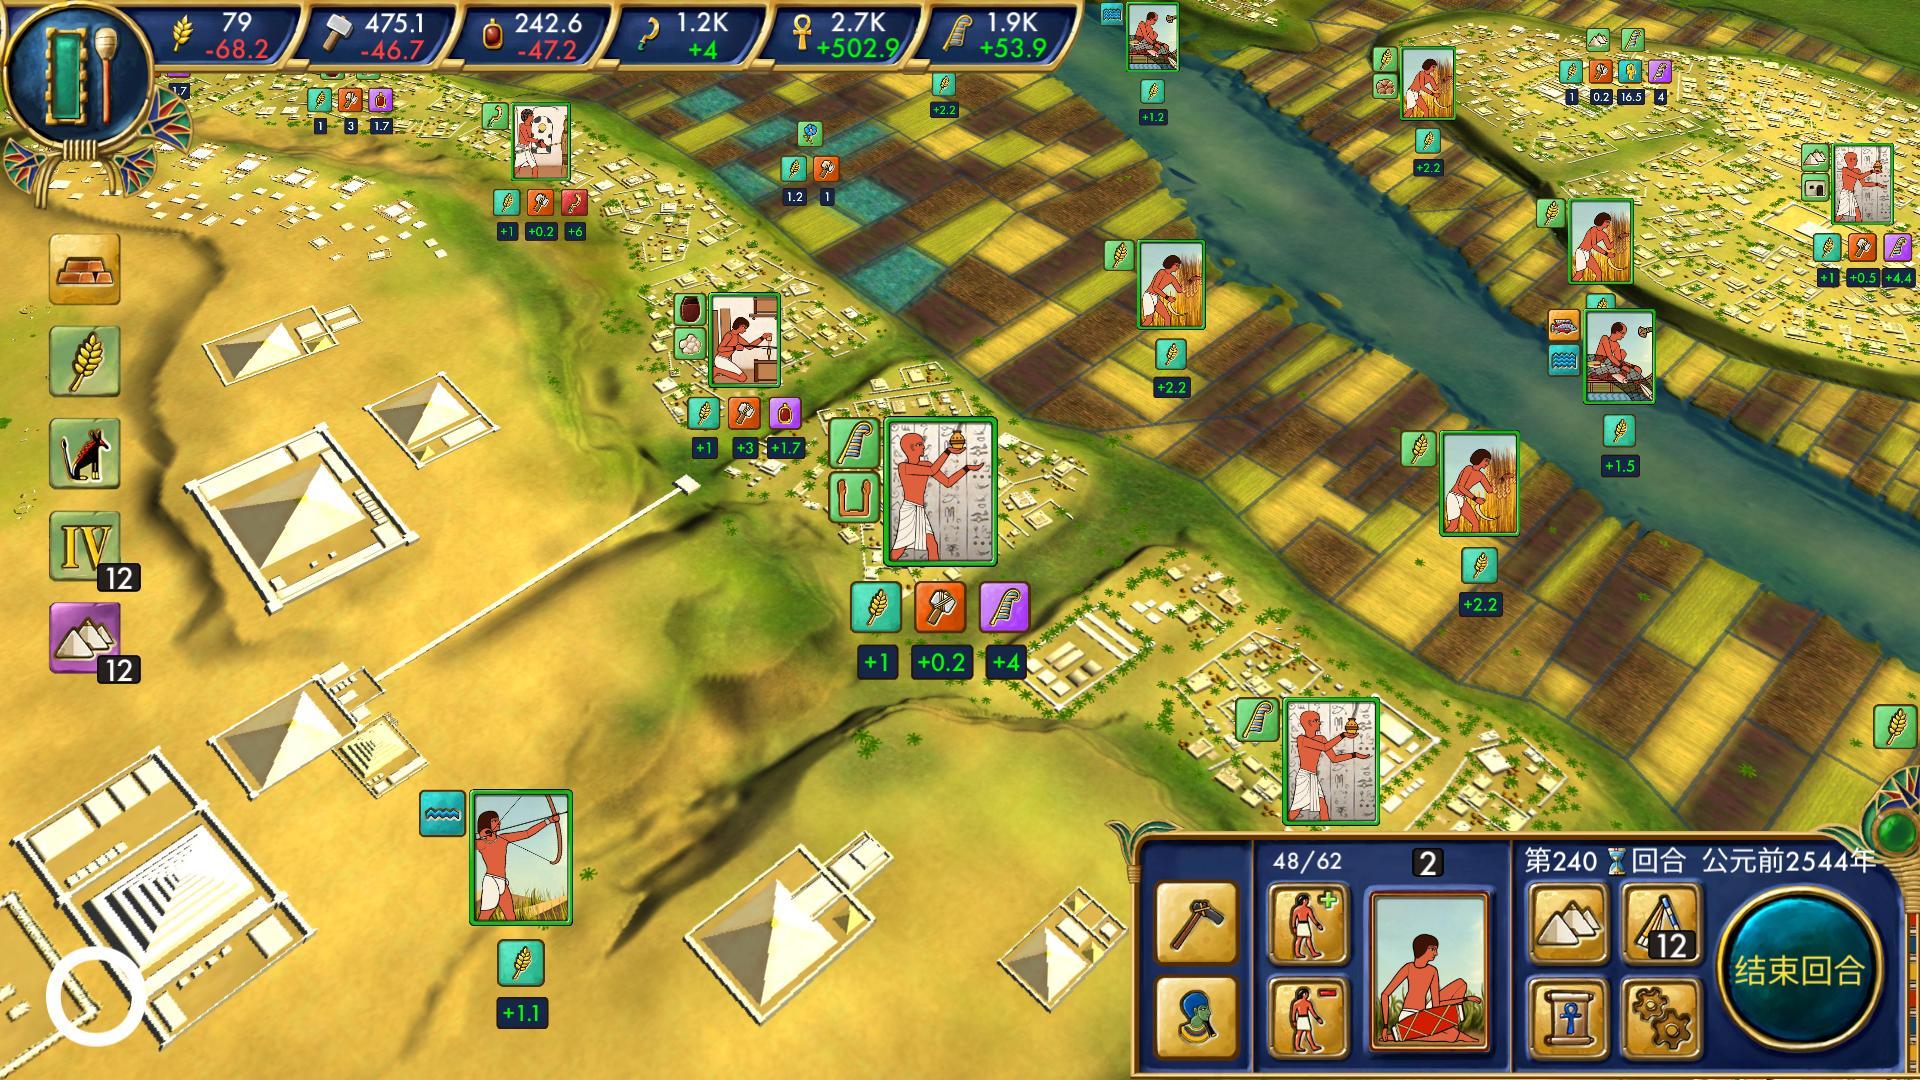 Screenshot 1 of Ai Cập: Vương quốc cũ 0.1.54